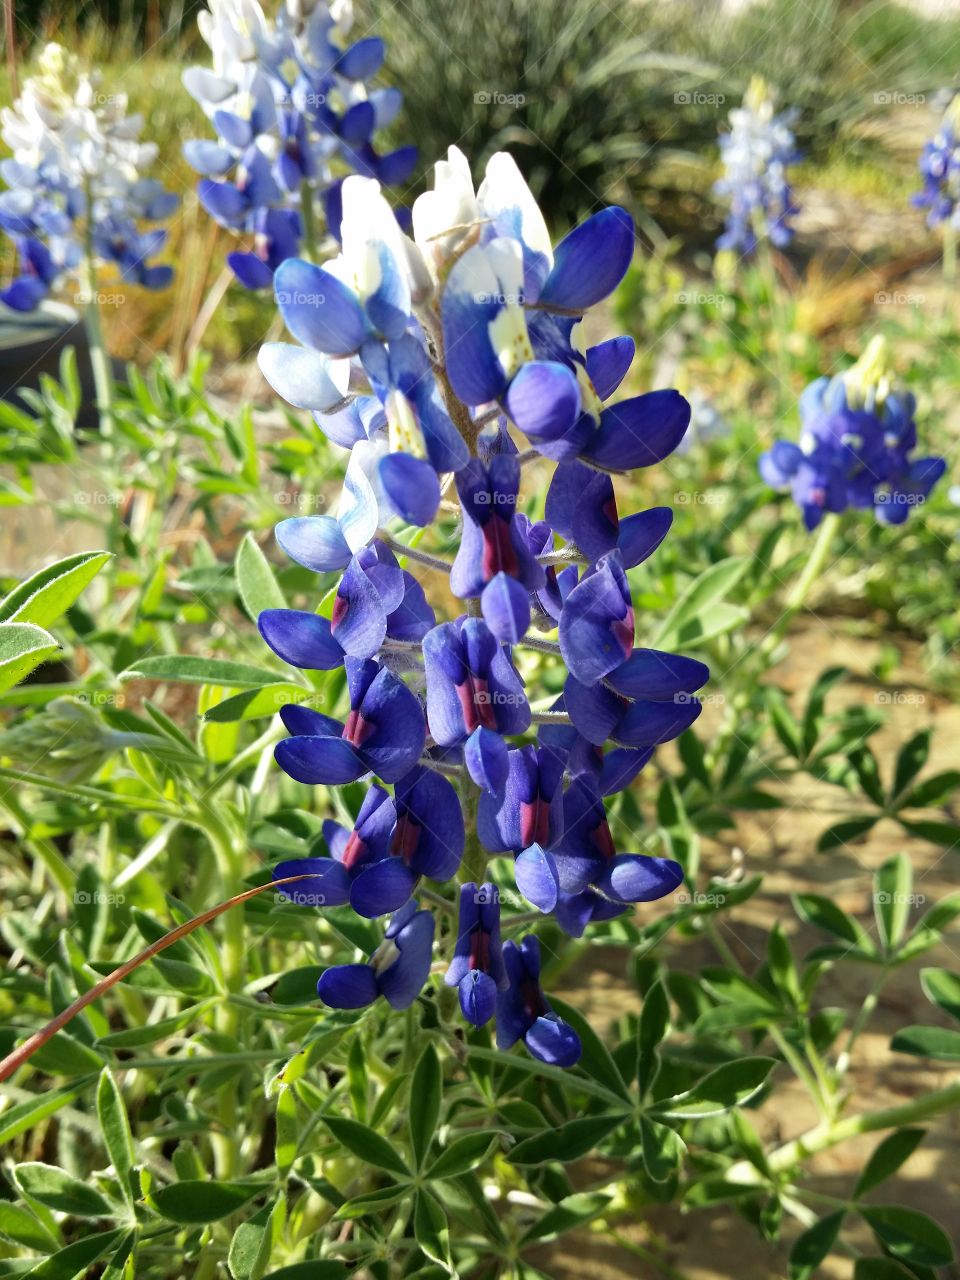 Bluebonnet wildflowers in a flower bed